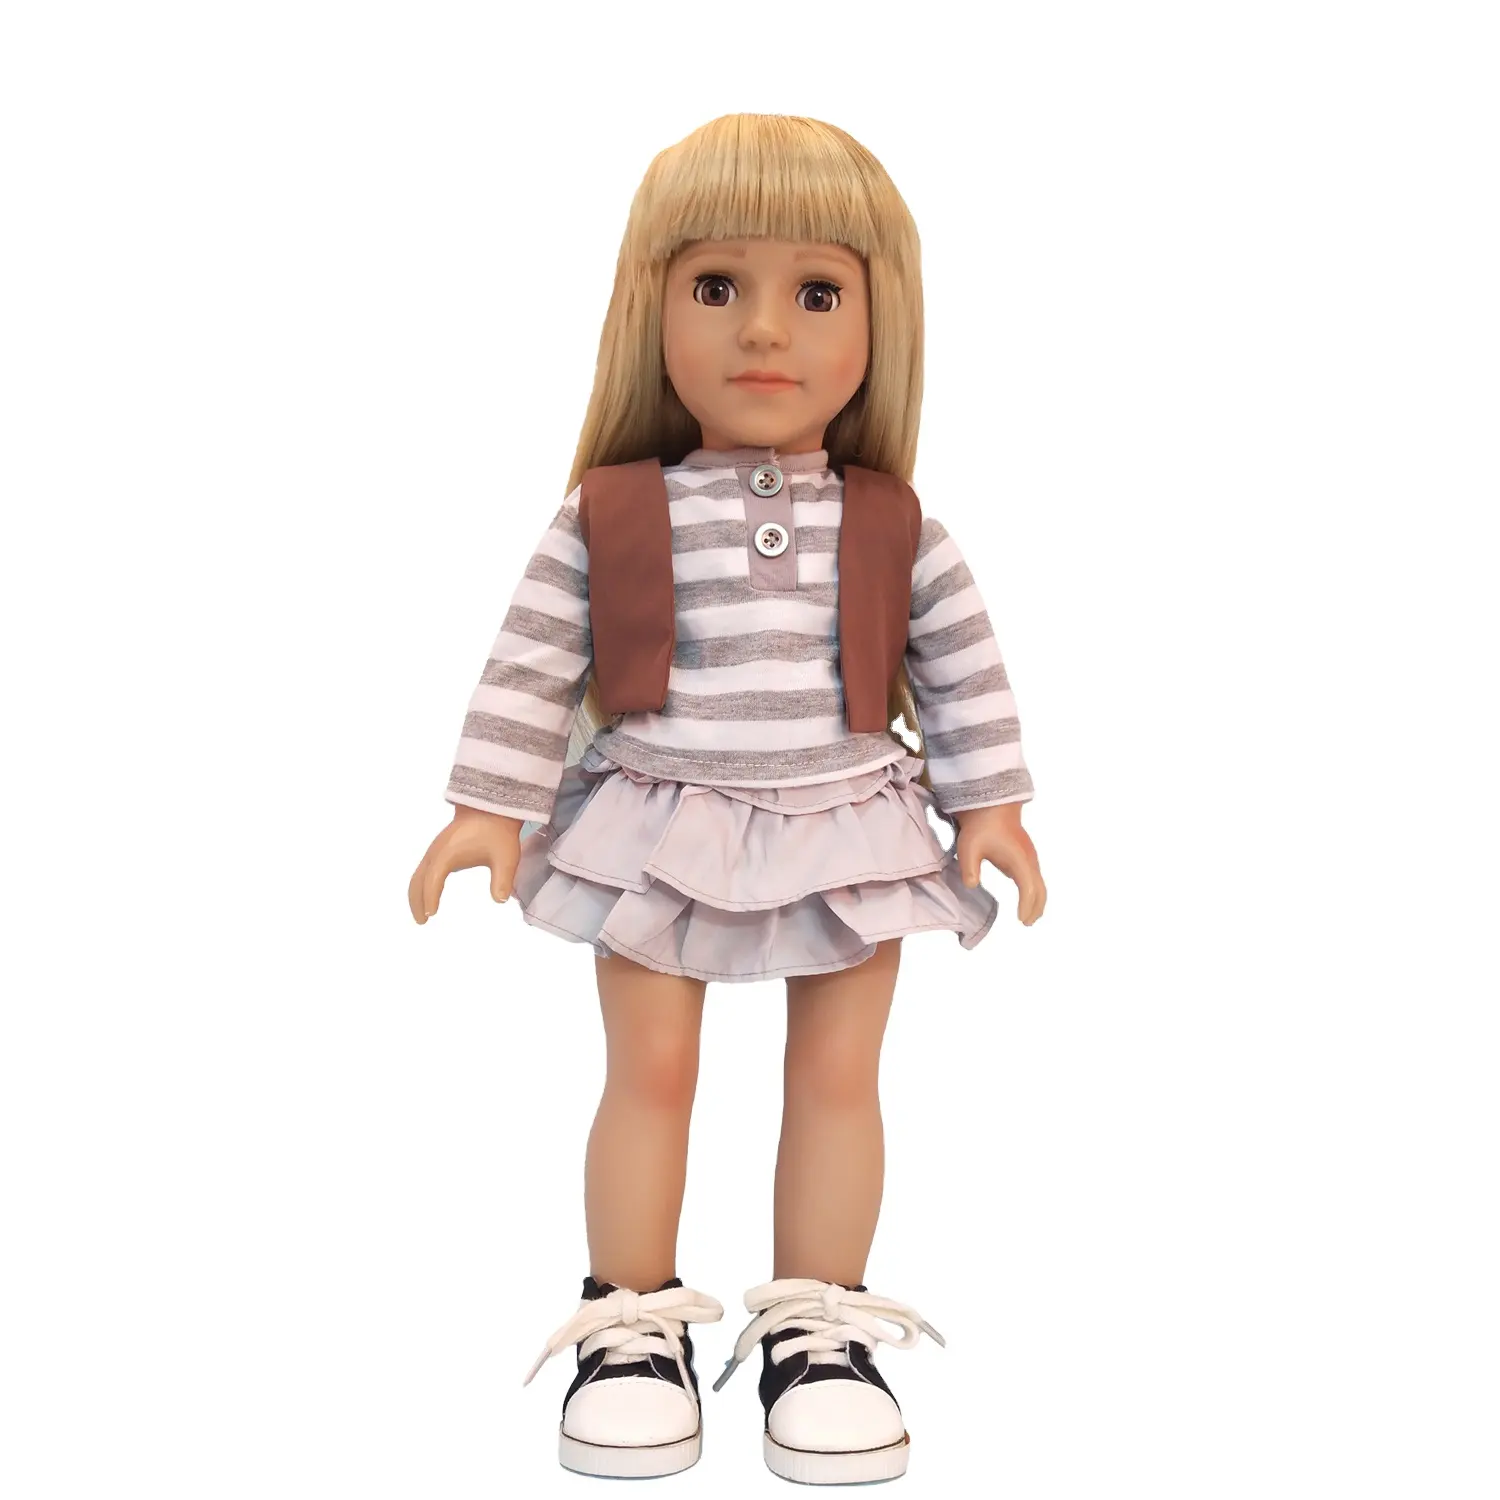 Piezas de muñeca con cuerpo para chica, regalo de promoción, oferta, 18 en moda americana